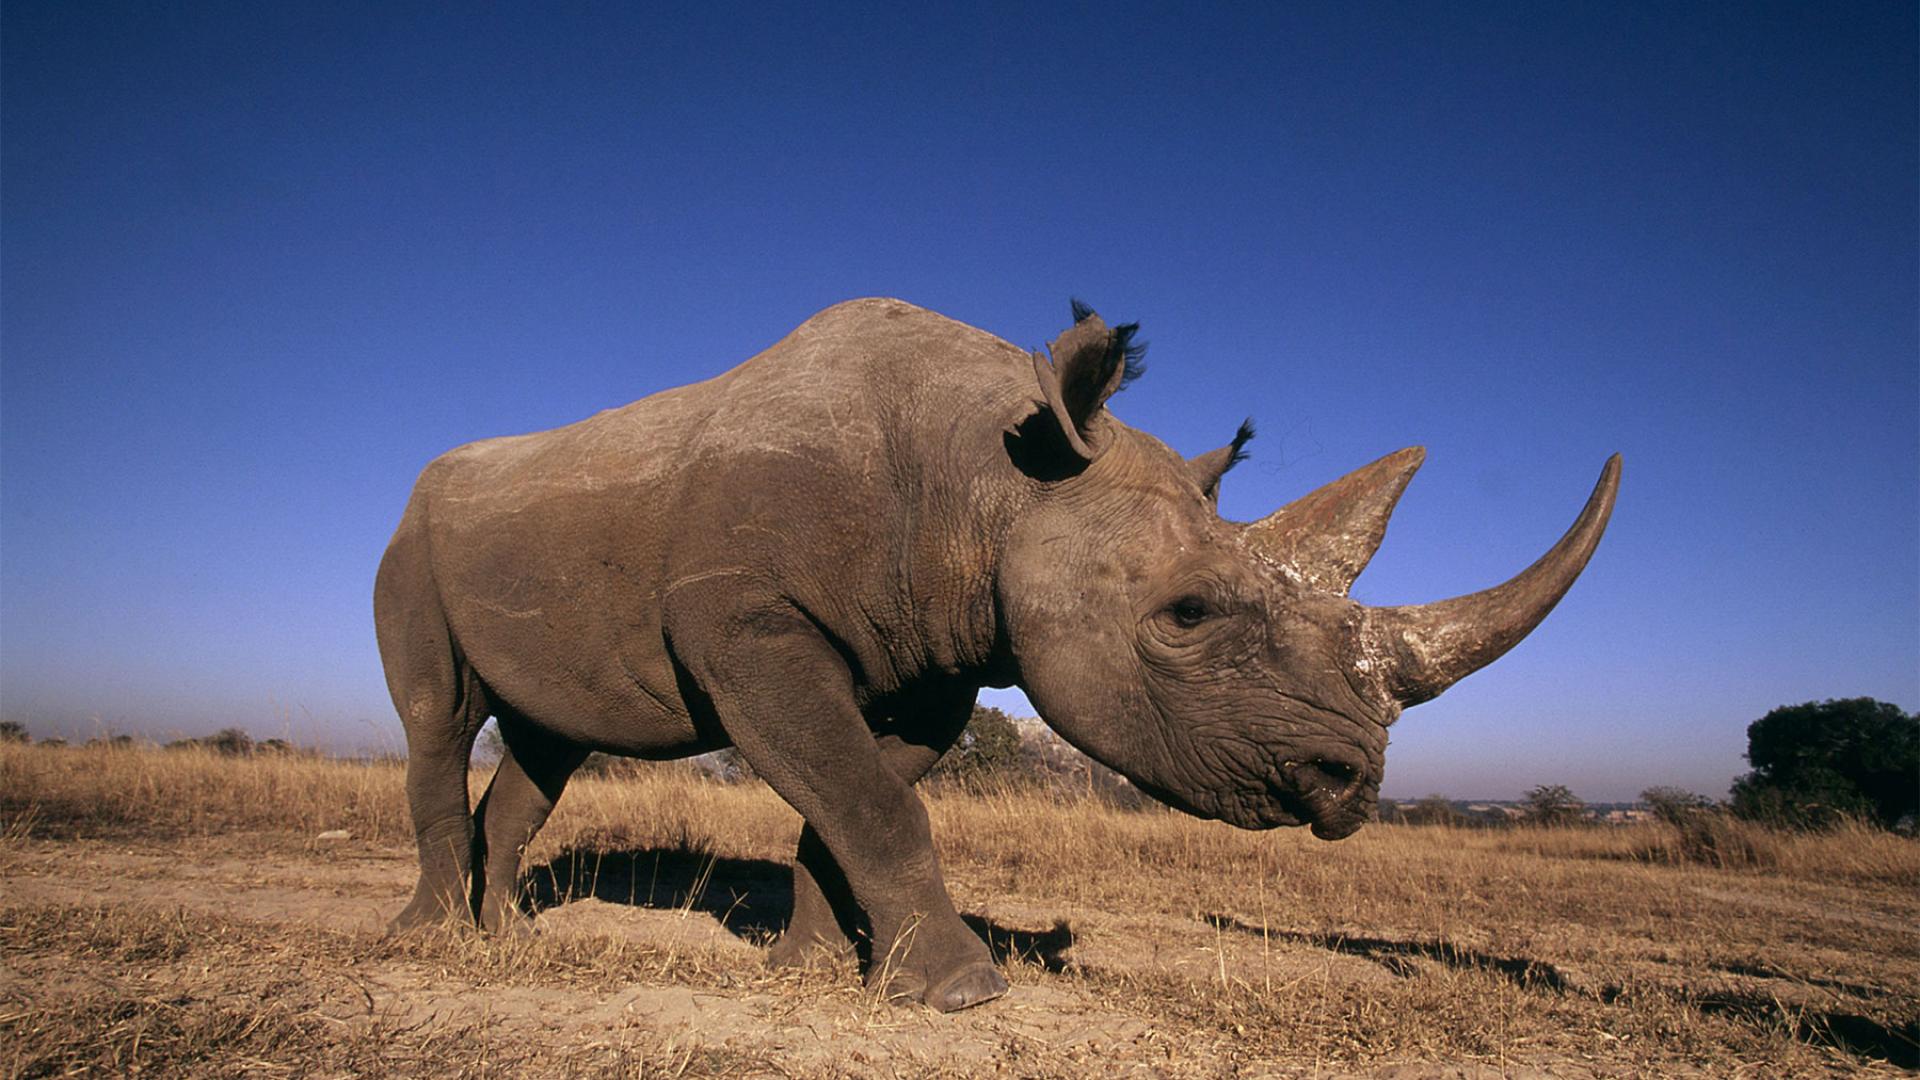 photo of a rhinoceros